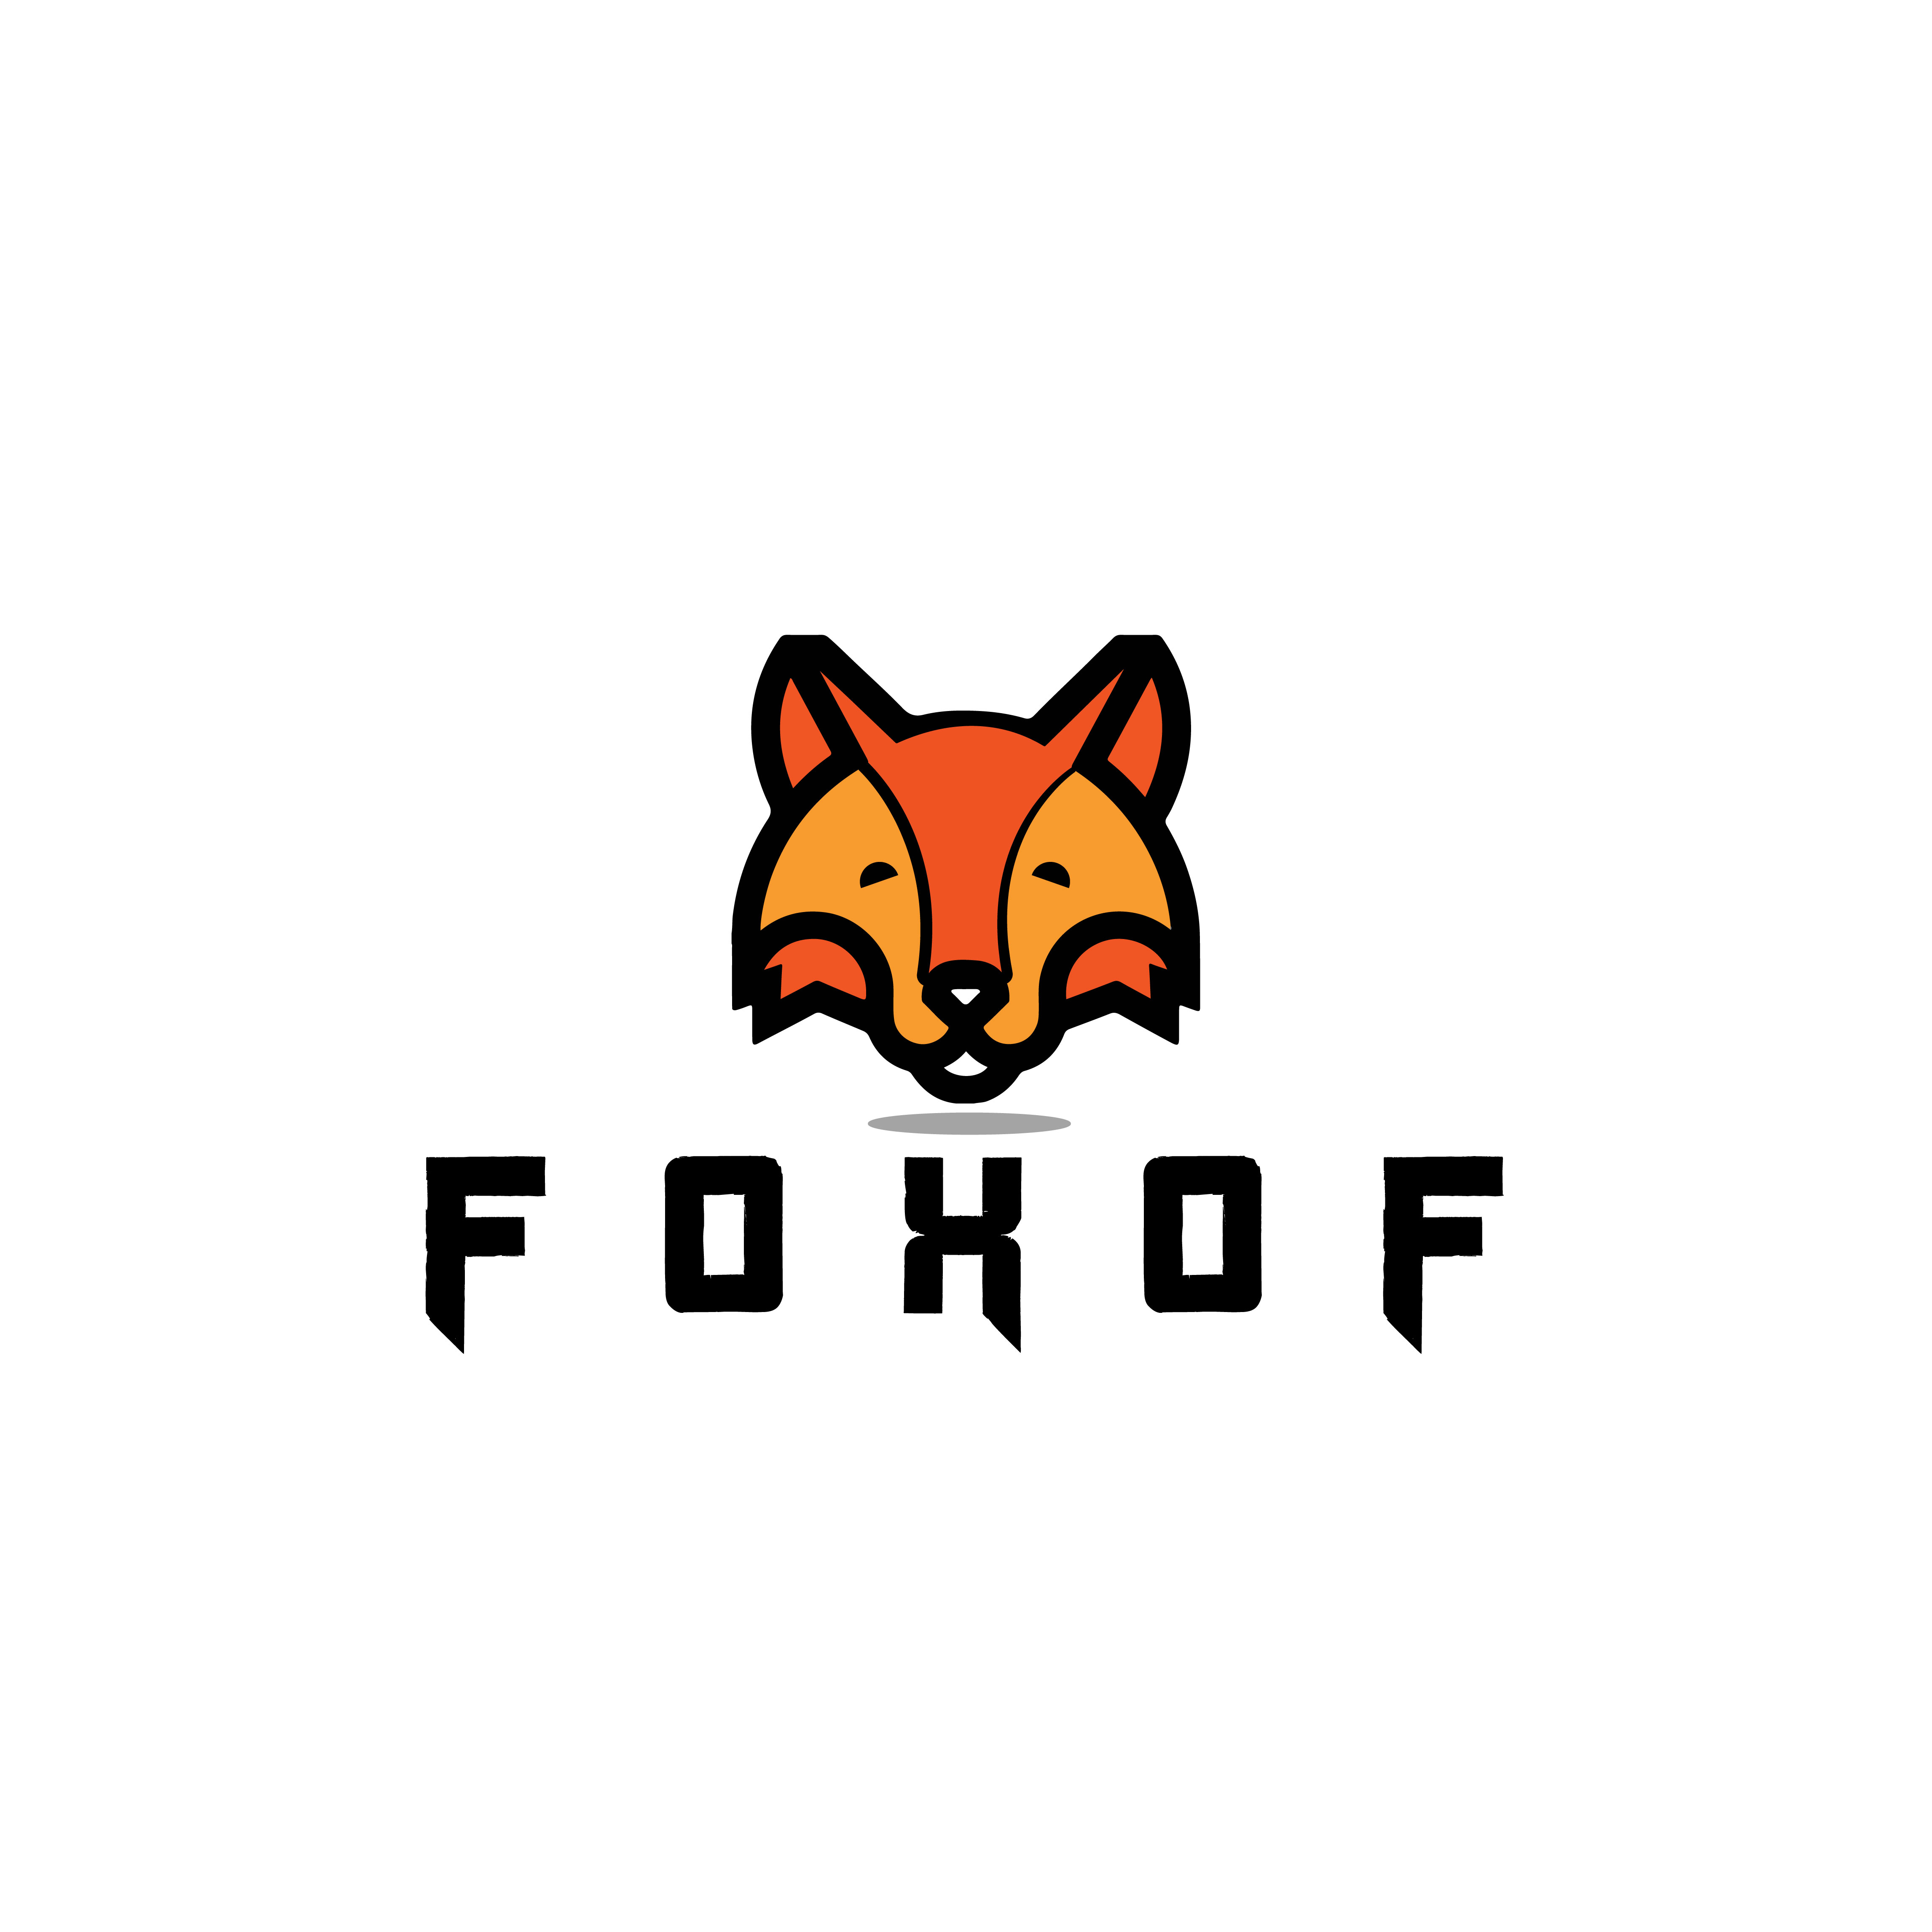 Foxof logo design/ animal logo preview image.